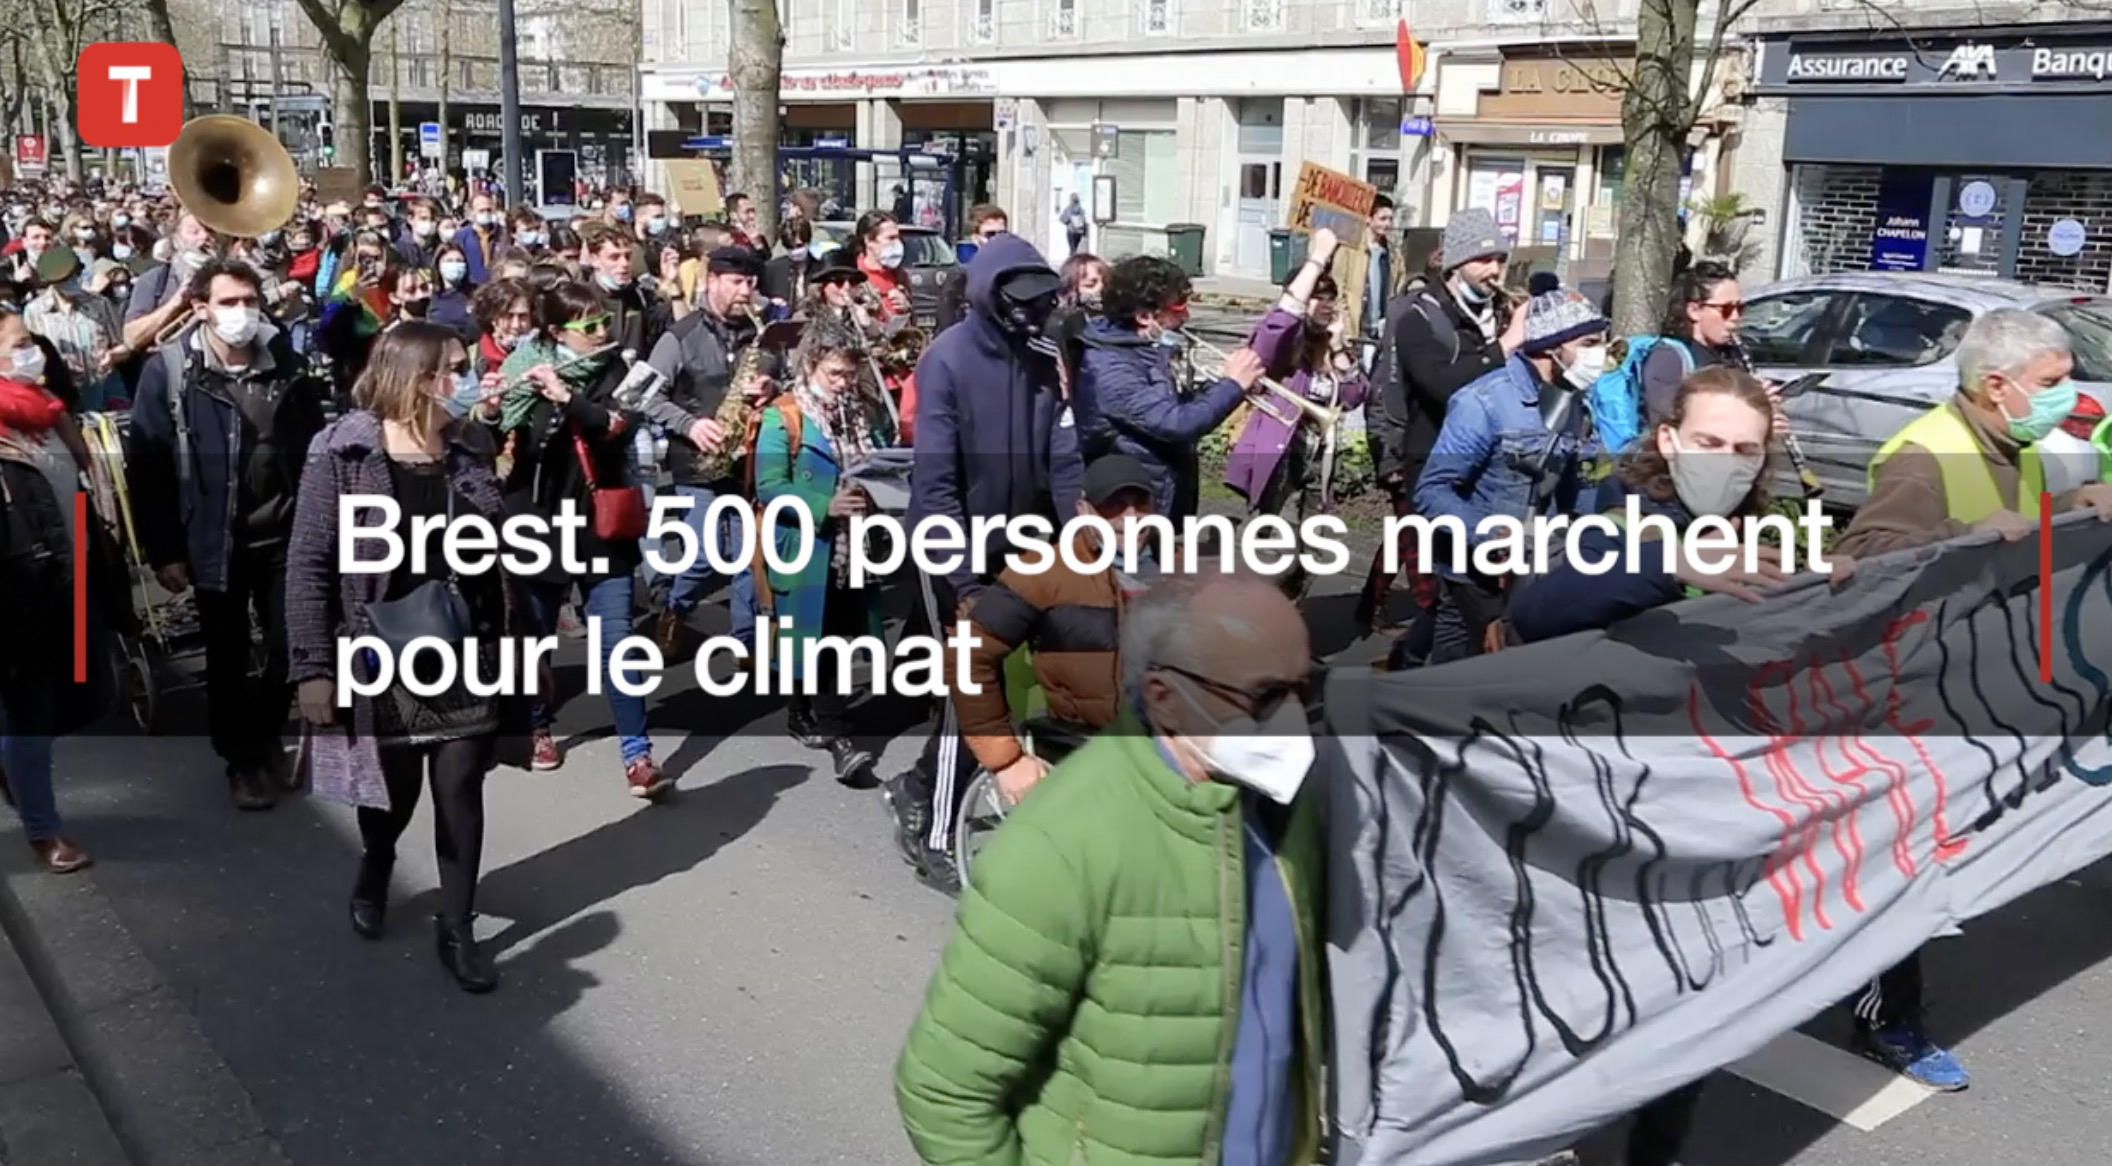 Brest. 500 personnes marchent pour le climat  (Le Télégramme)